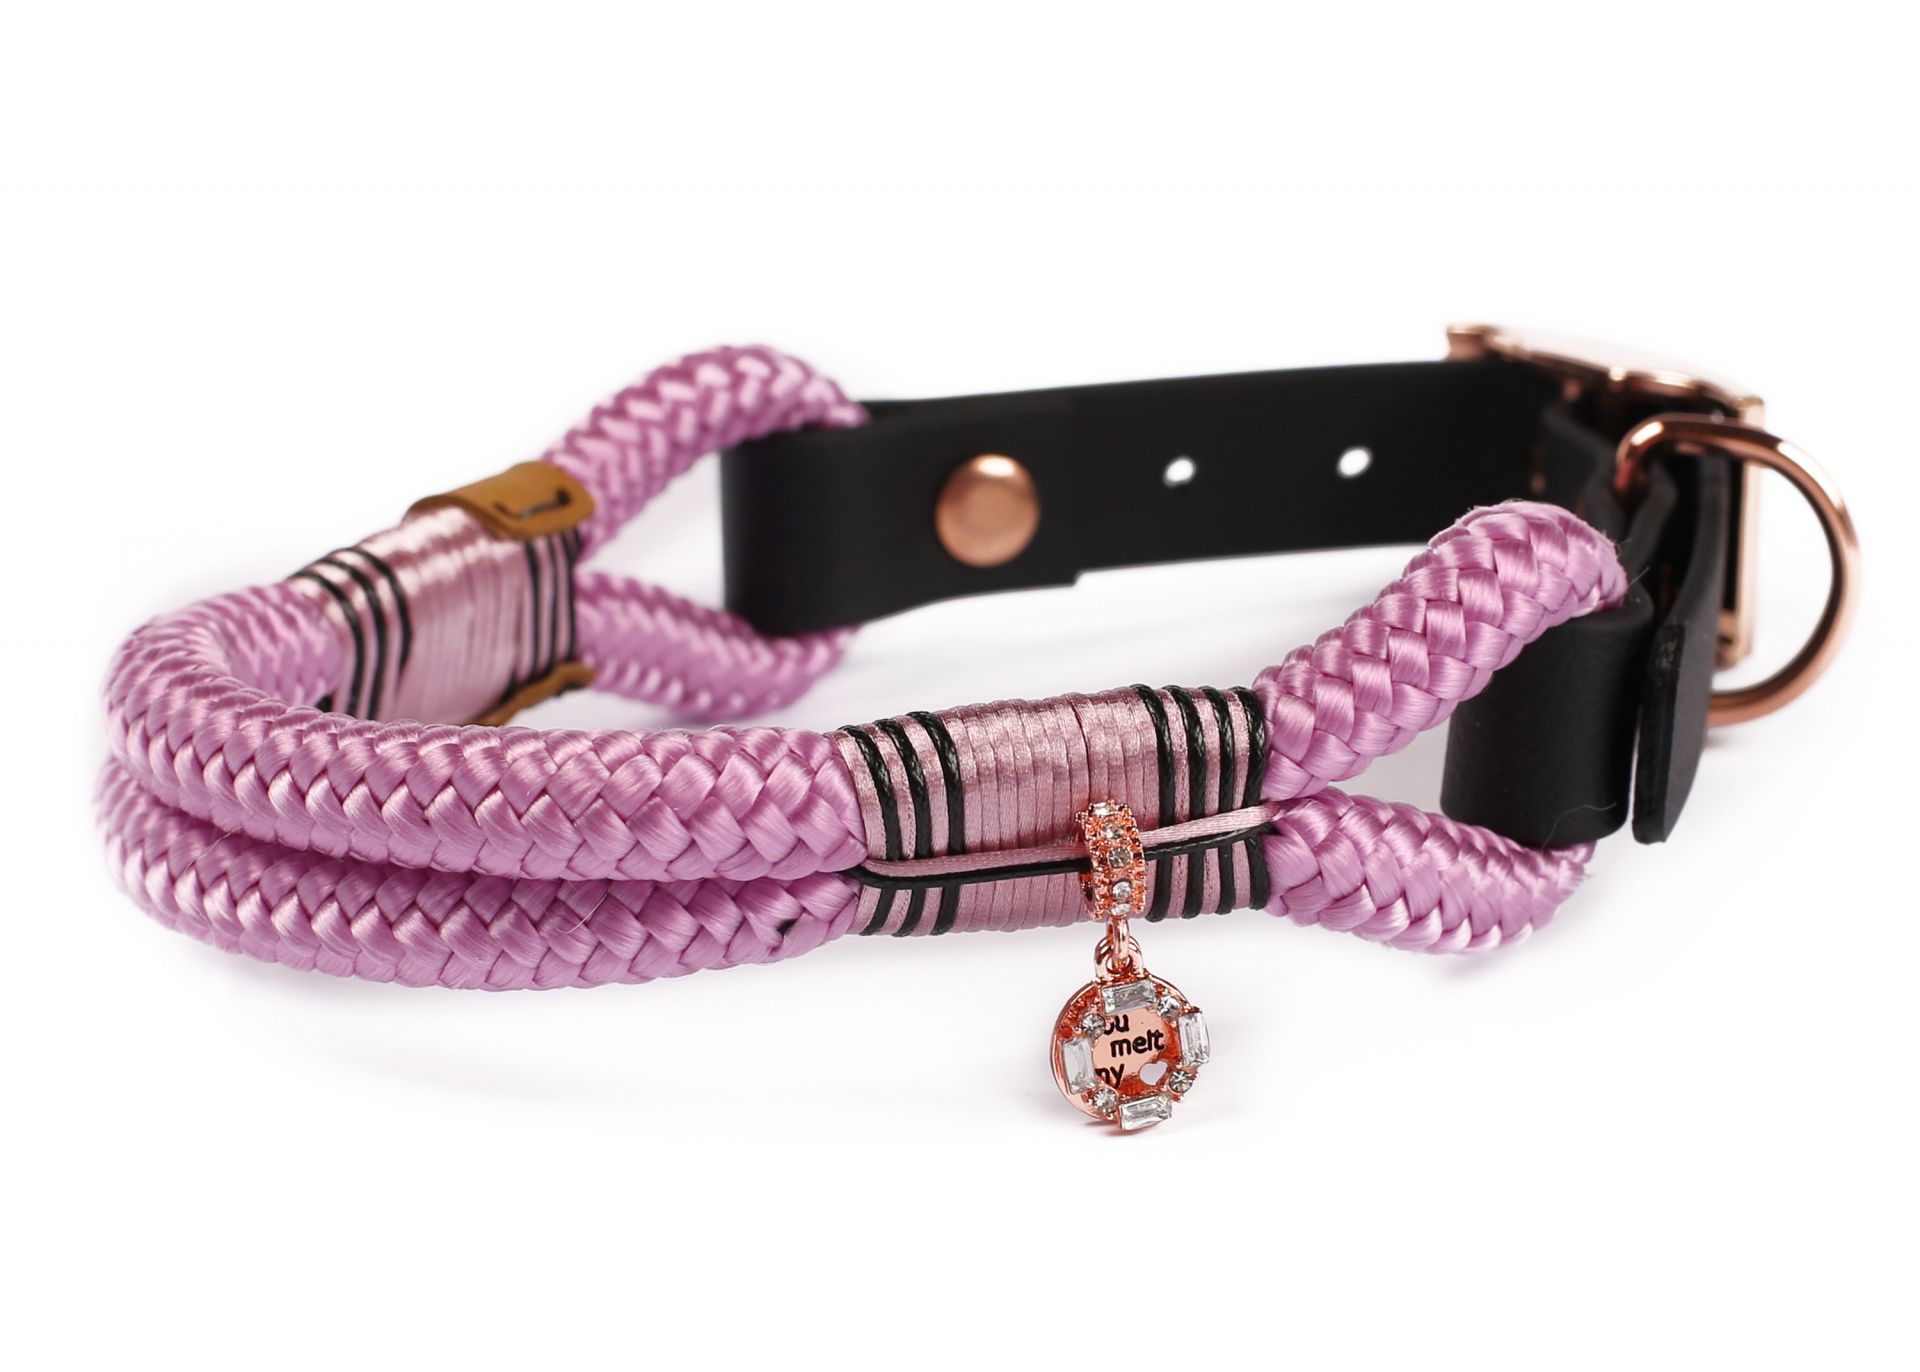 Halsband Hundehalsband Tauhalsband ohne Perlen Vegan Handarbeit abwaschbar verstellbar wasserabweisend robust Gassi gehen schwarz Roségold Lavendel